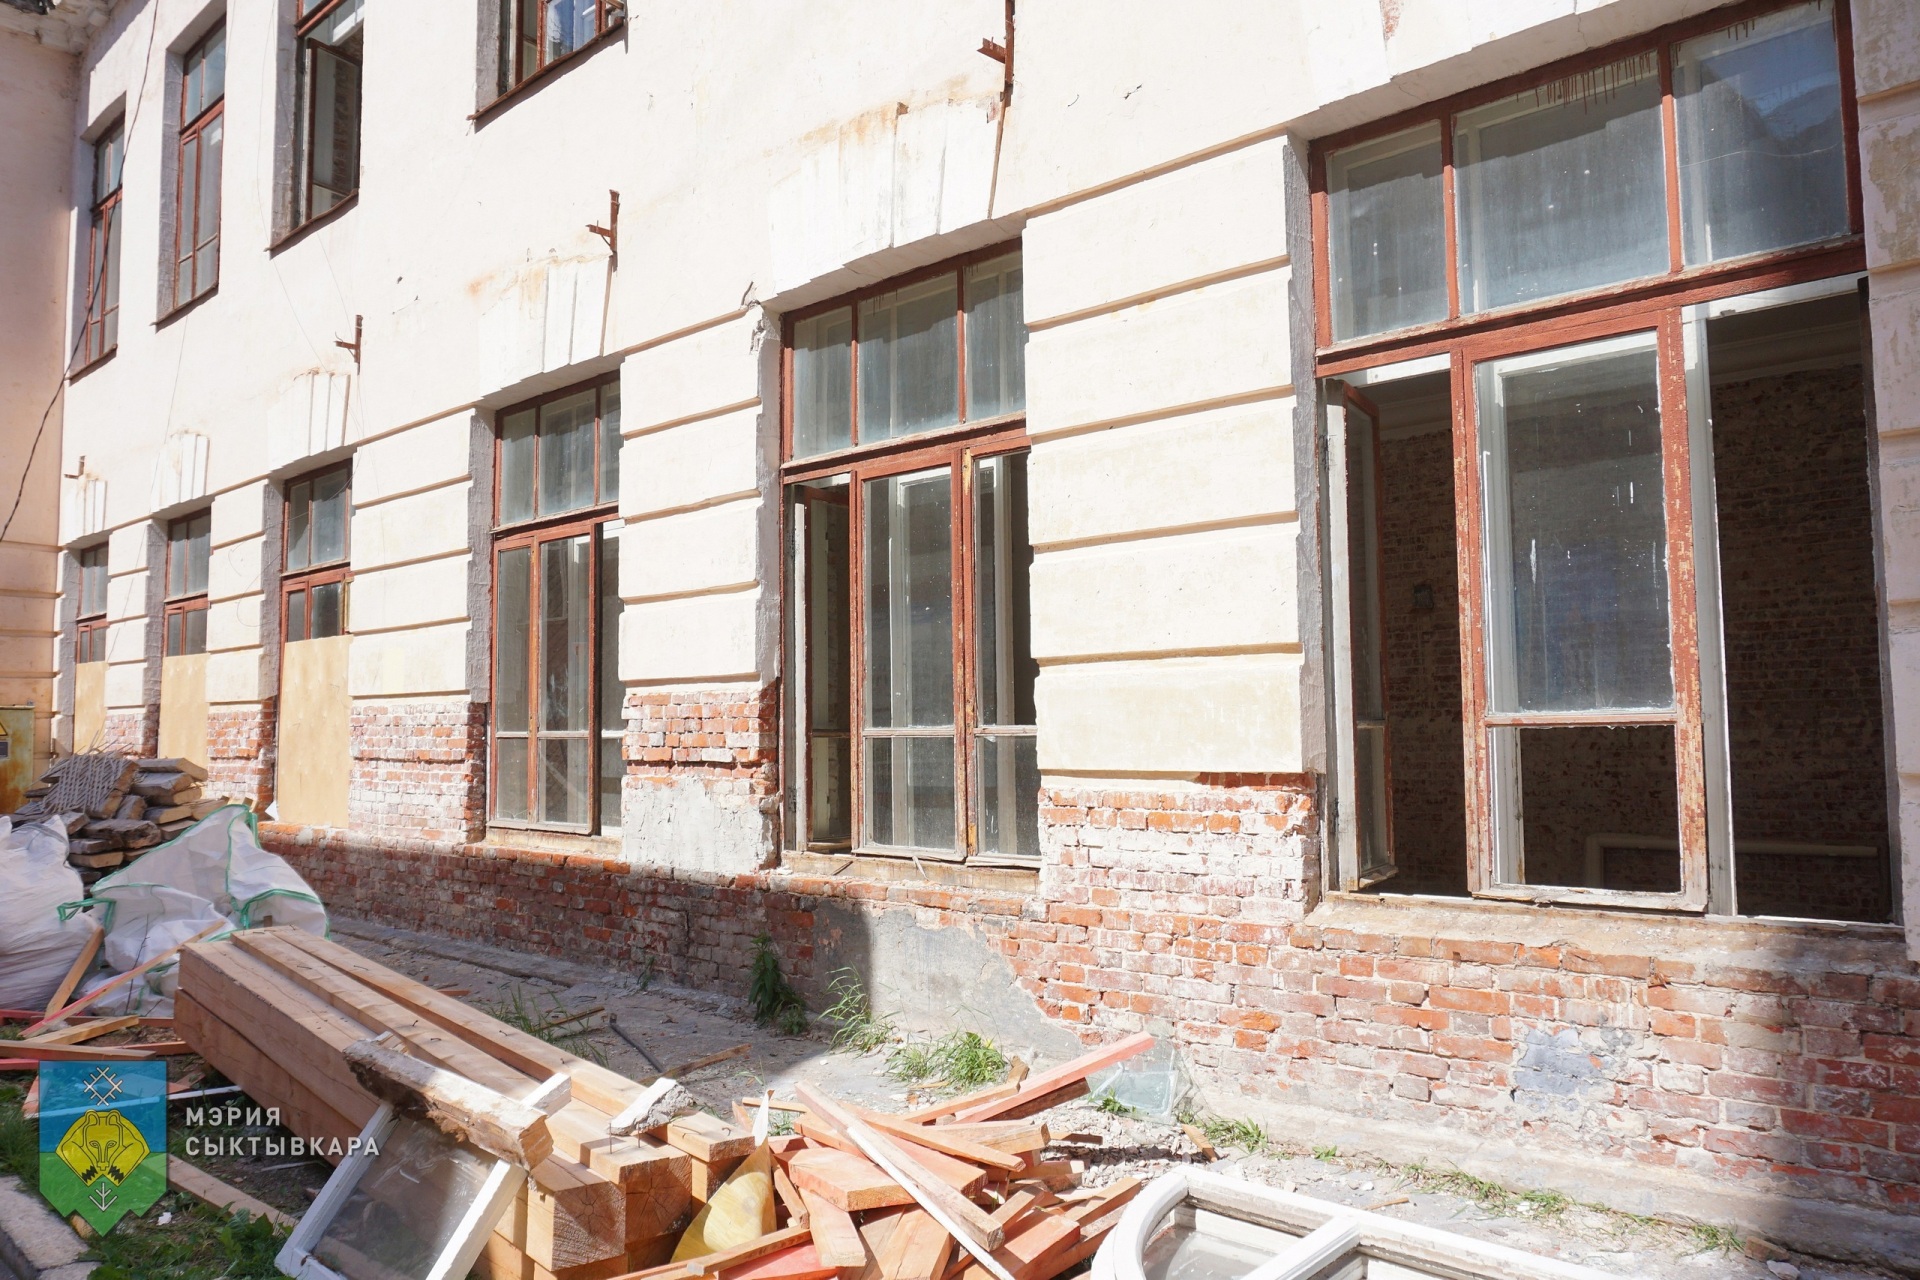 
Новгородские кирпичи и чугунные вьюшки нашли во время ремонта школы в Сыктывкаре